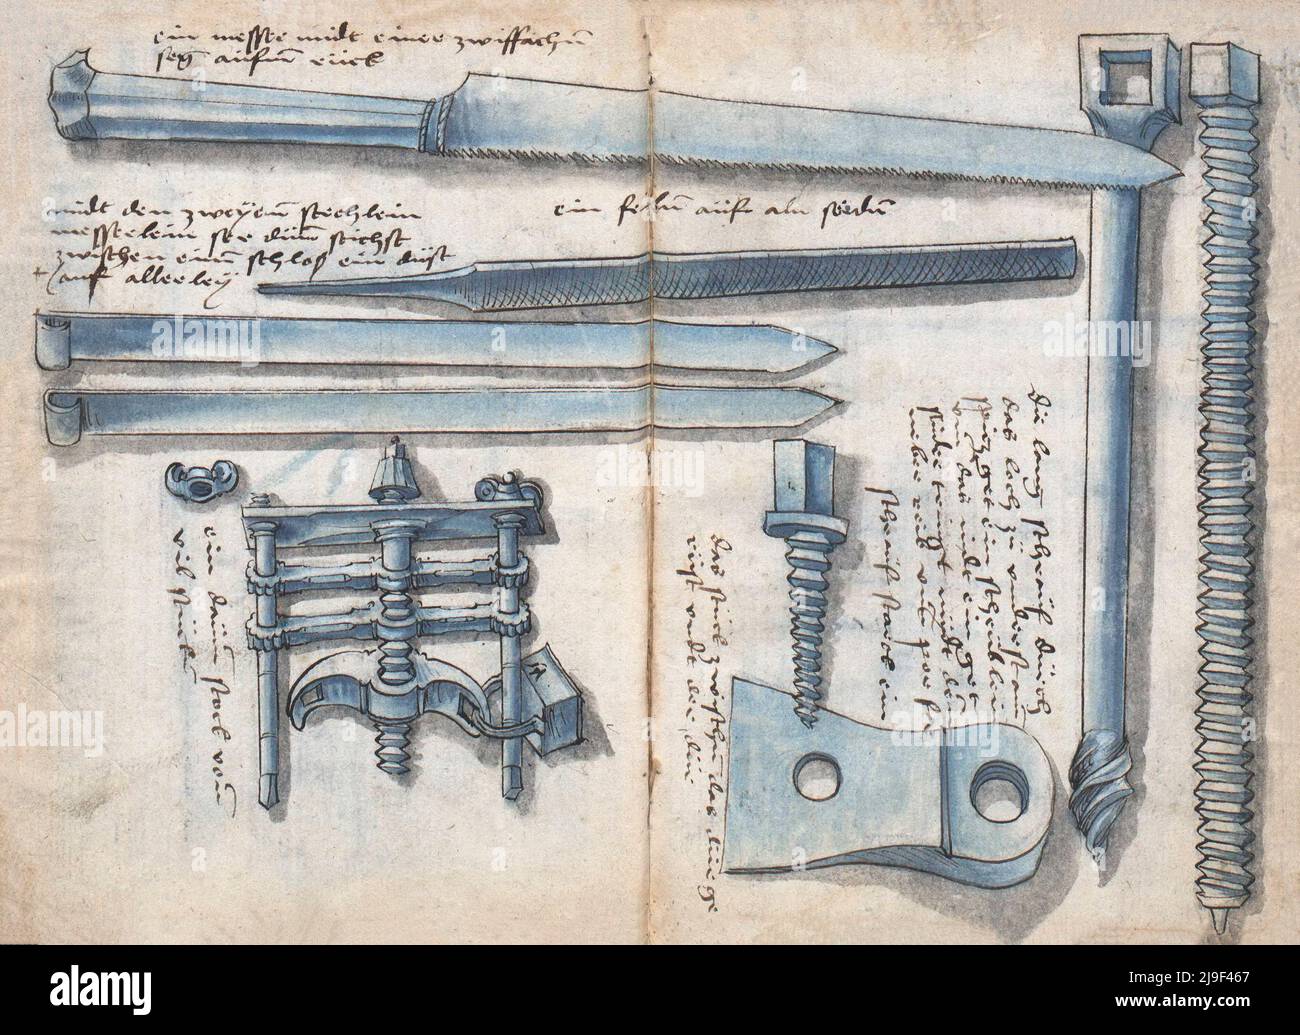 Carpintería medieval, muebles y otras artesanías: Las herramientas de Martin Löffelholz (1505) Löffelholtz Codex. Ilustraciones y descripciones de todo tipo Foto de stock